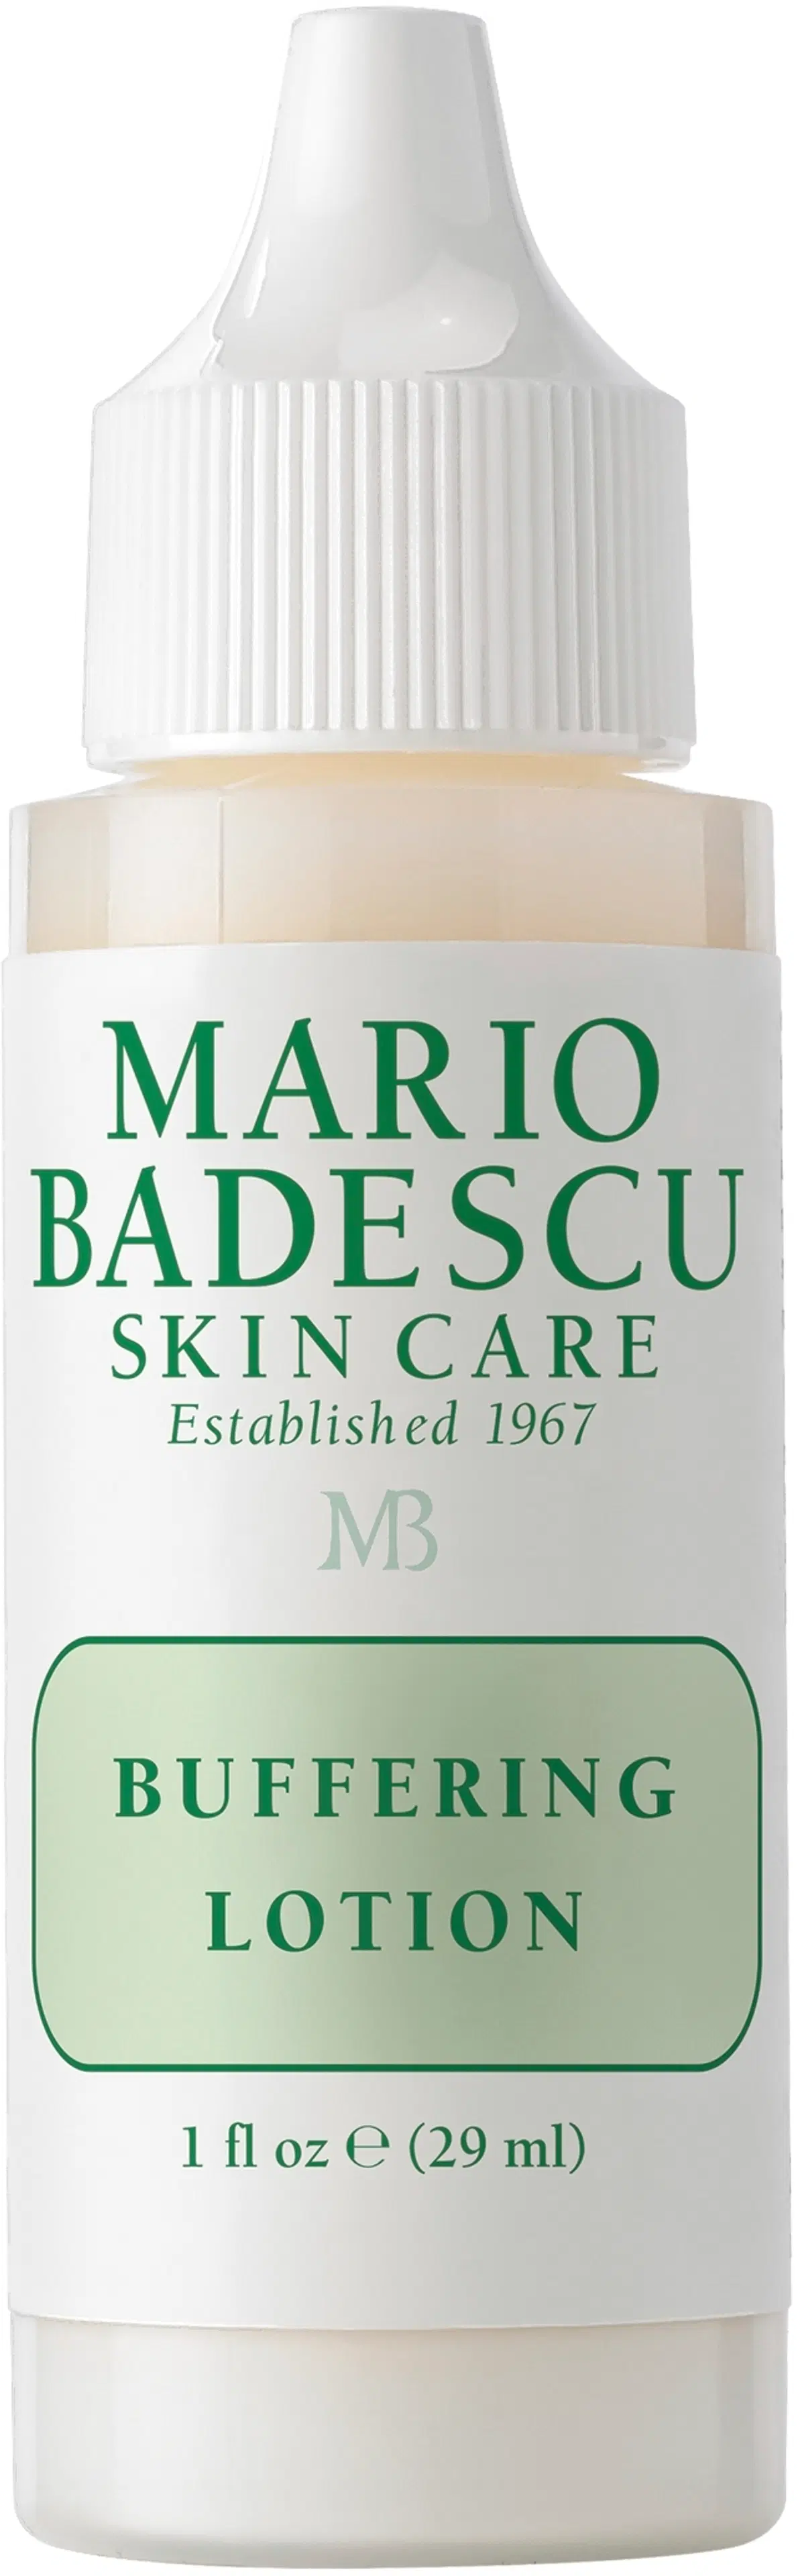 Mario Badescu Buffering Lotion täsmähoito ihonalaisille epäpuhtauksille 29ml